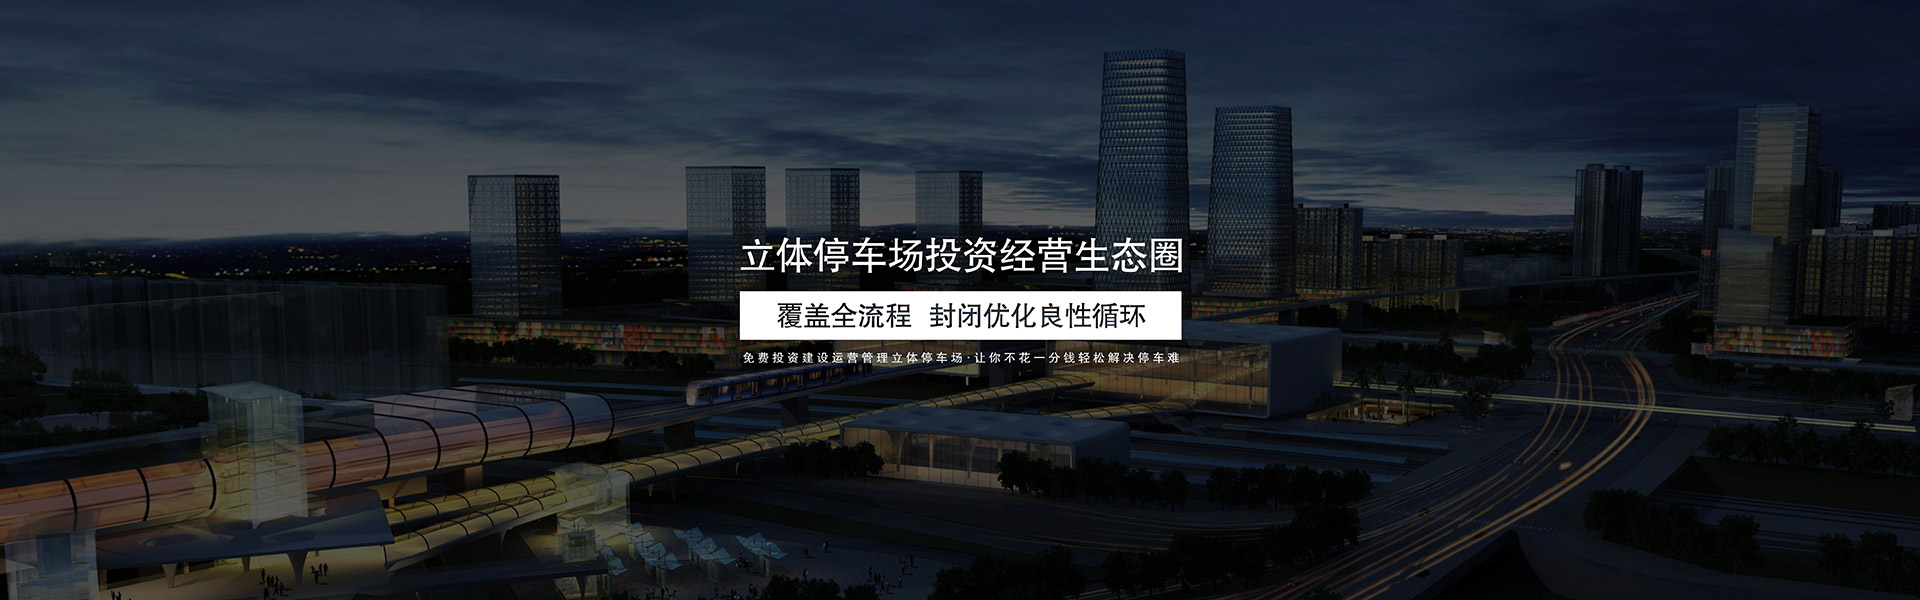 黑龙江停车场建设规划